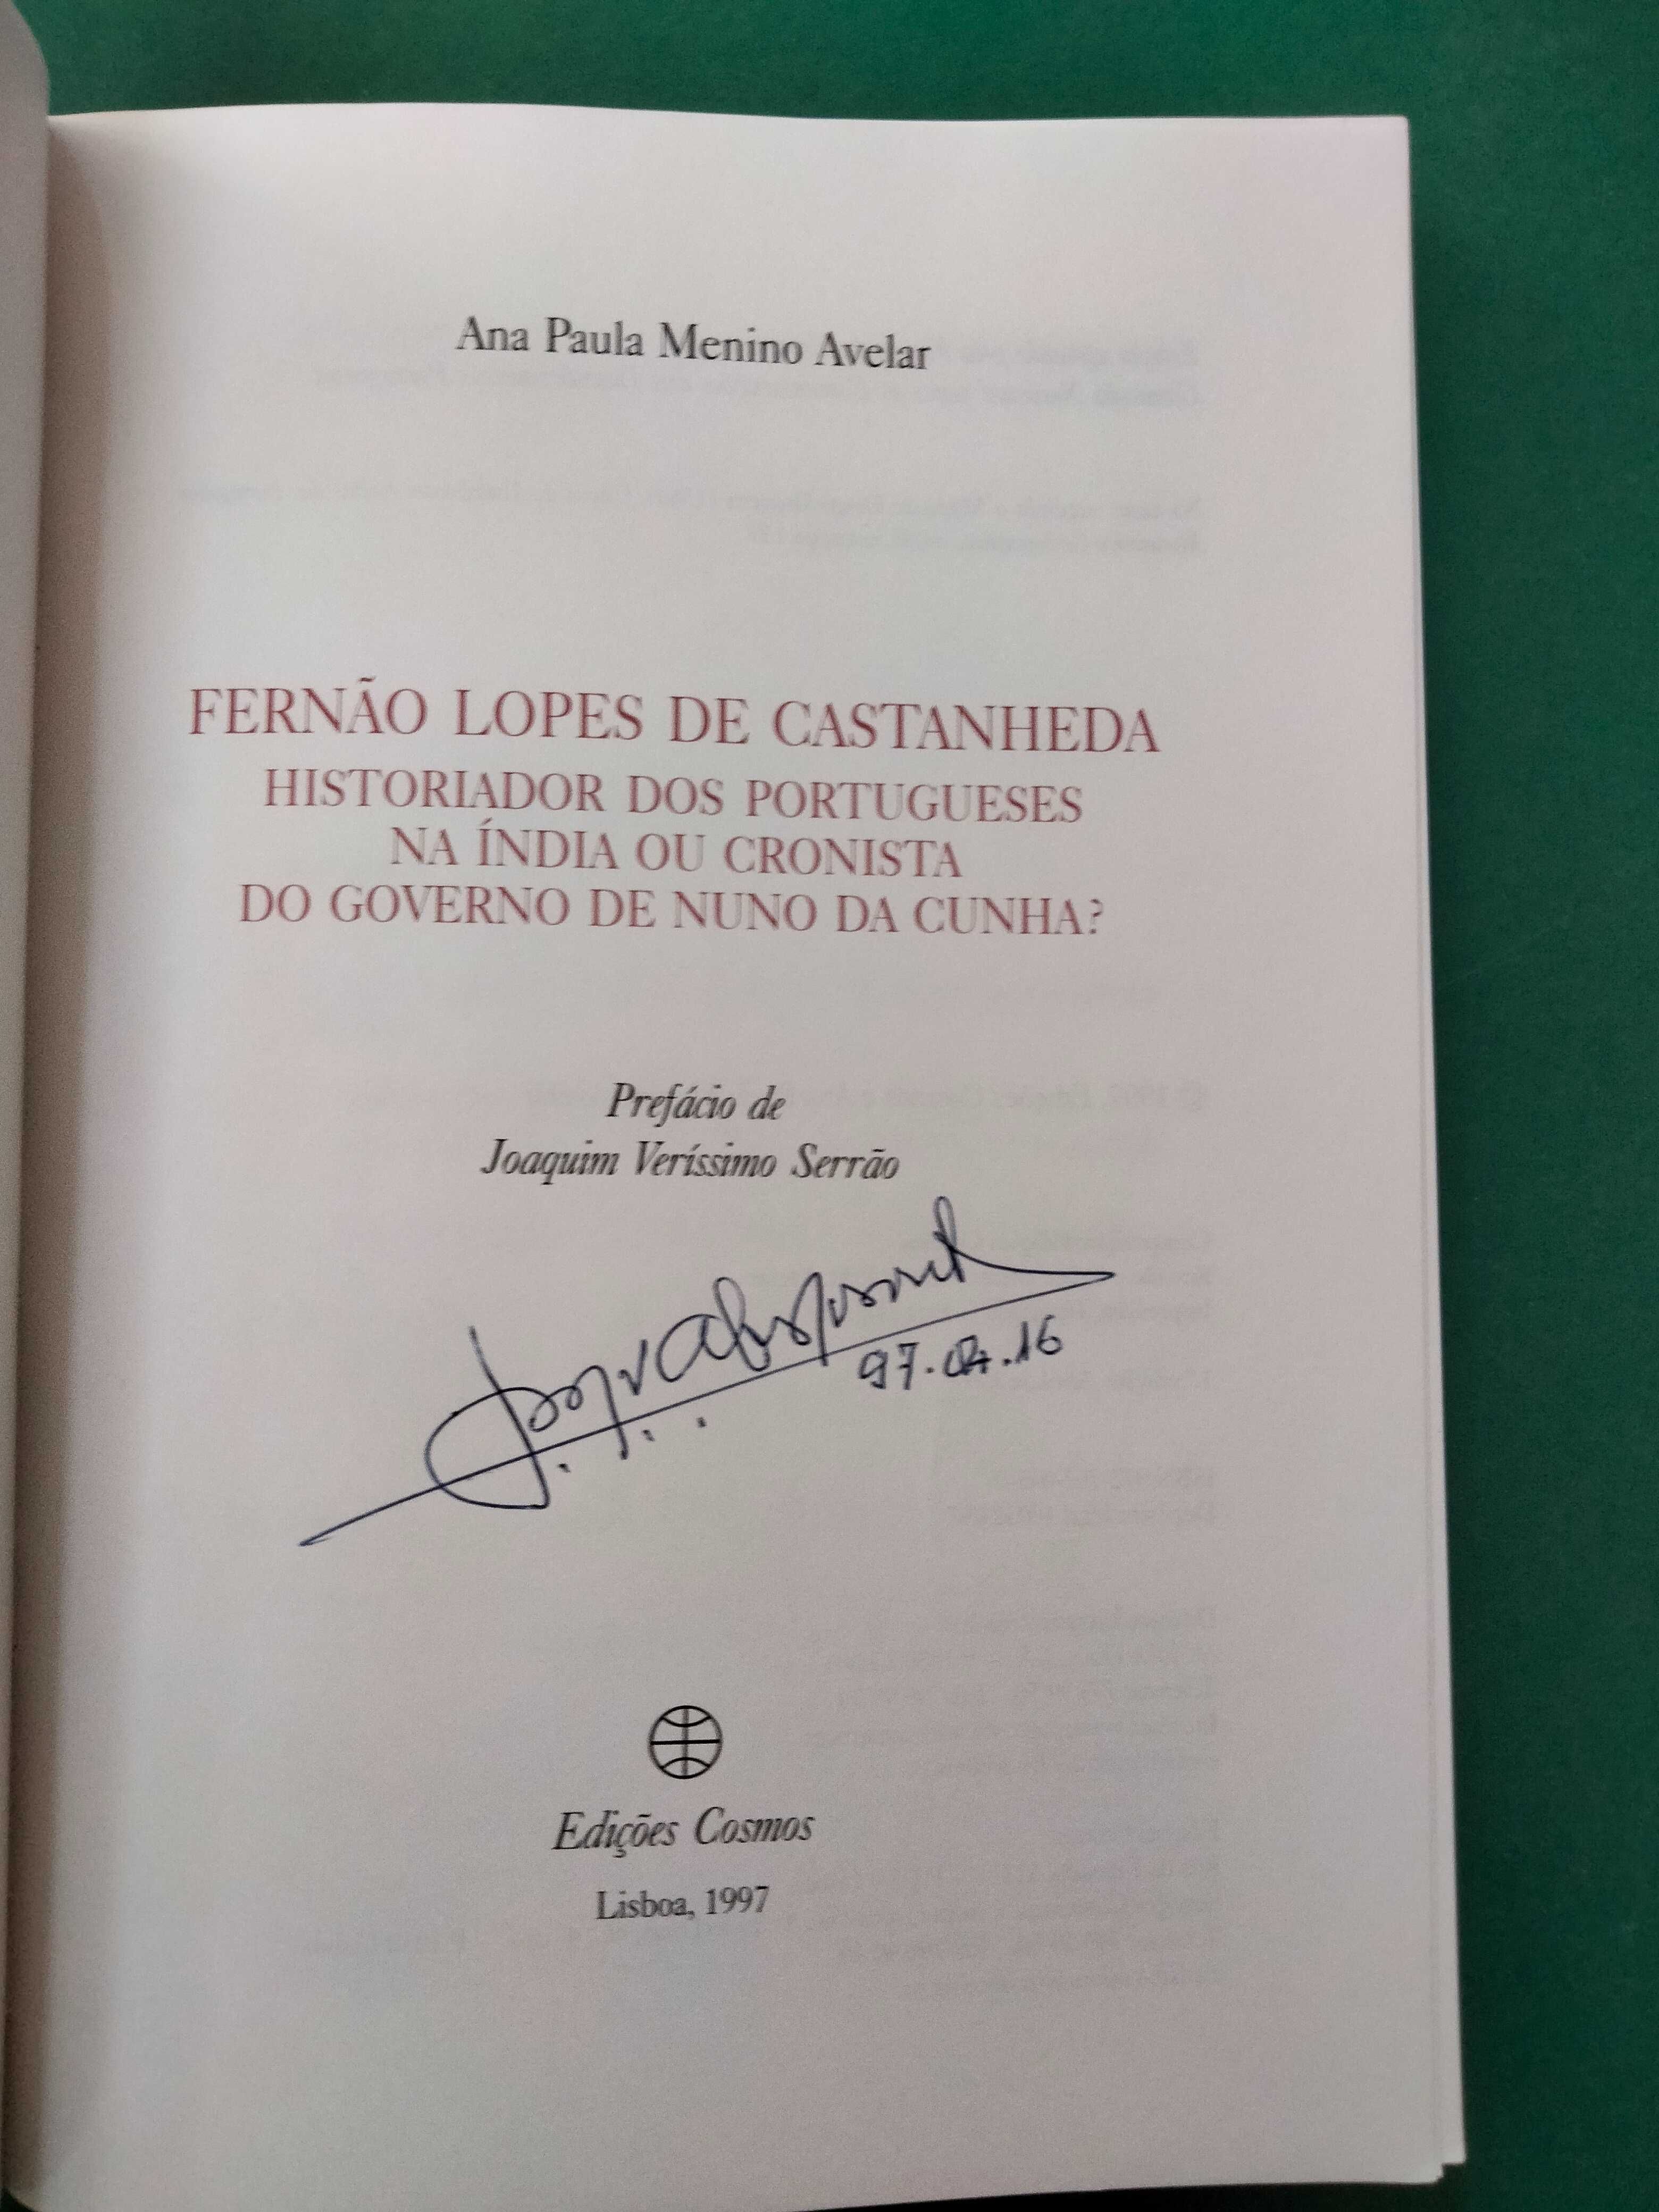 Fernão Lopes de Castanheda - Ana Paula Menino Avelar